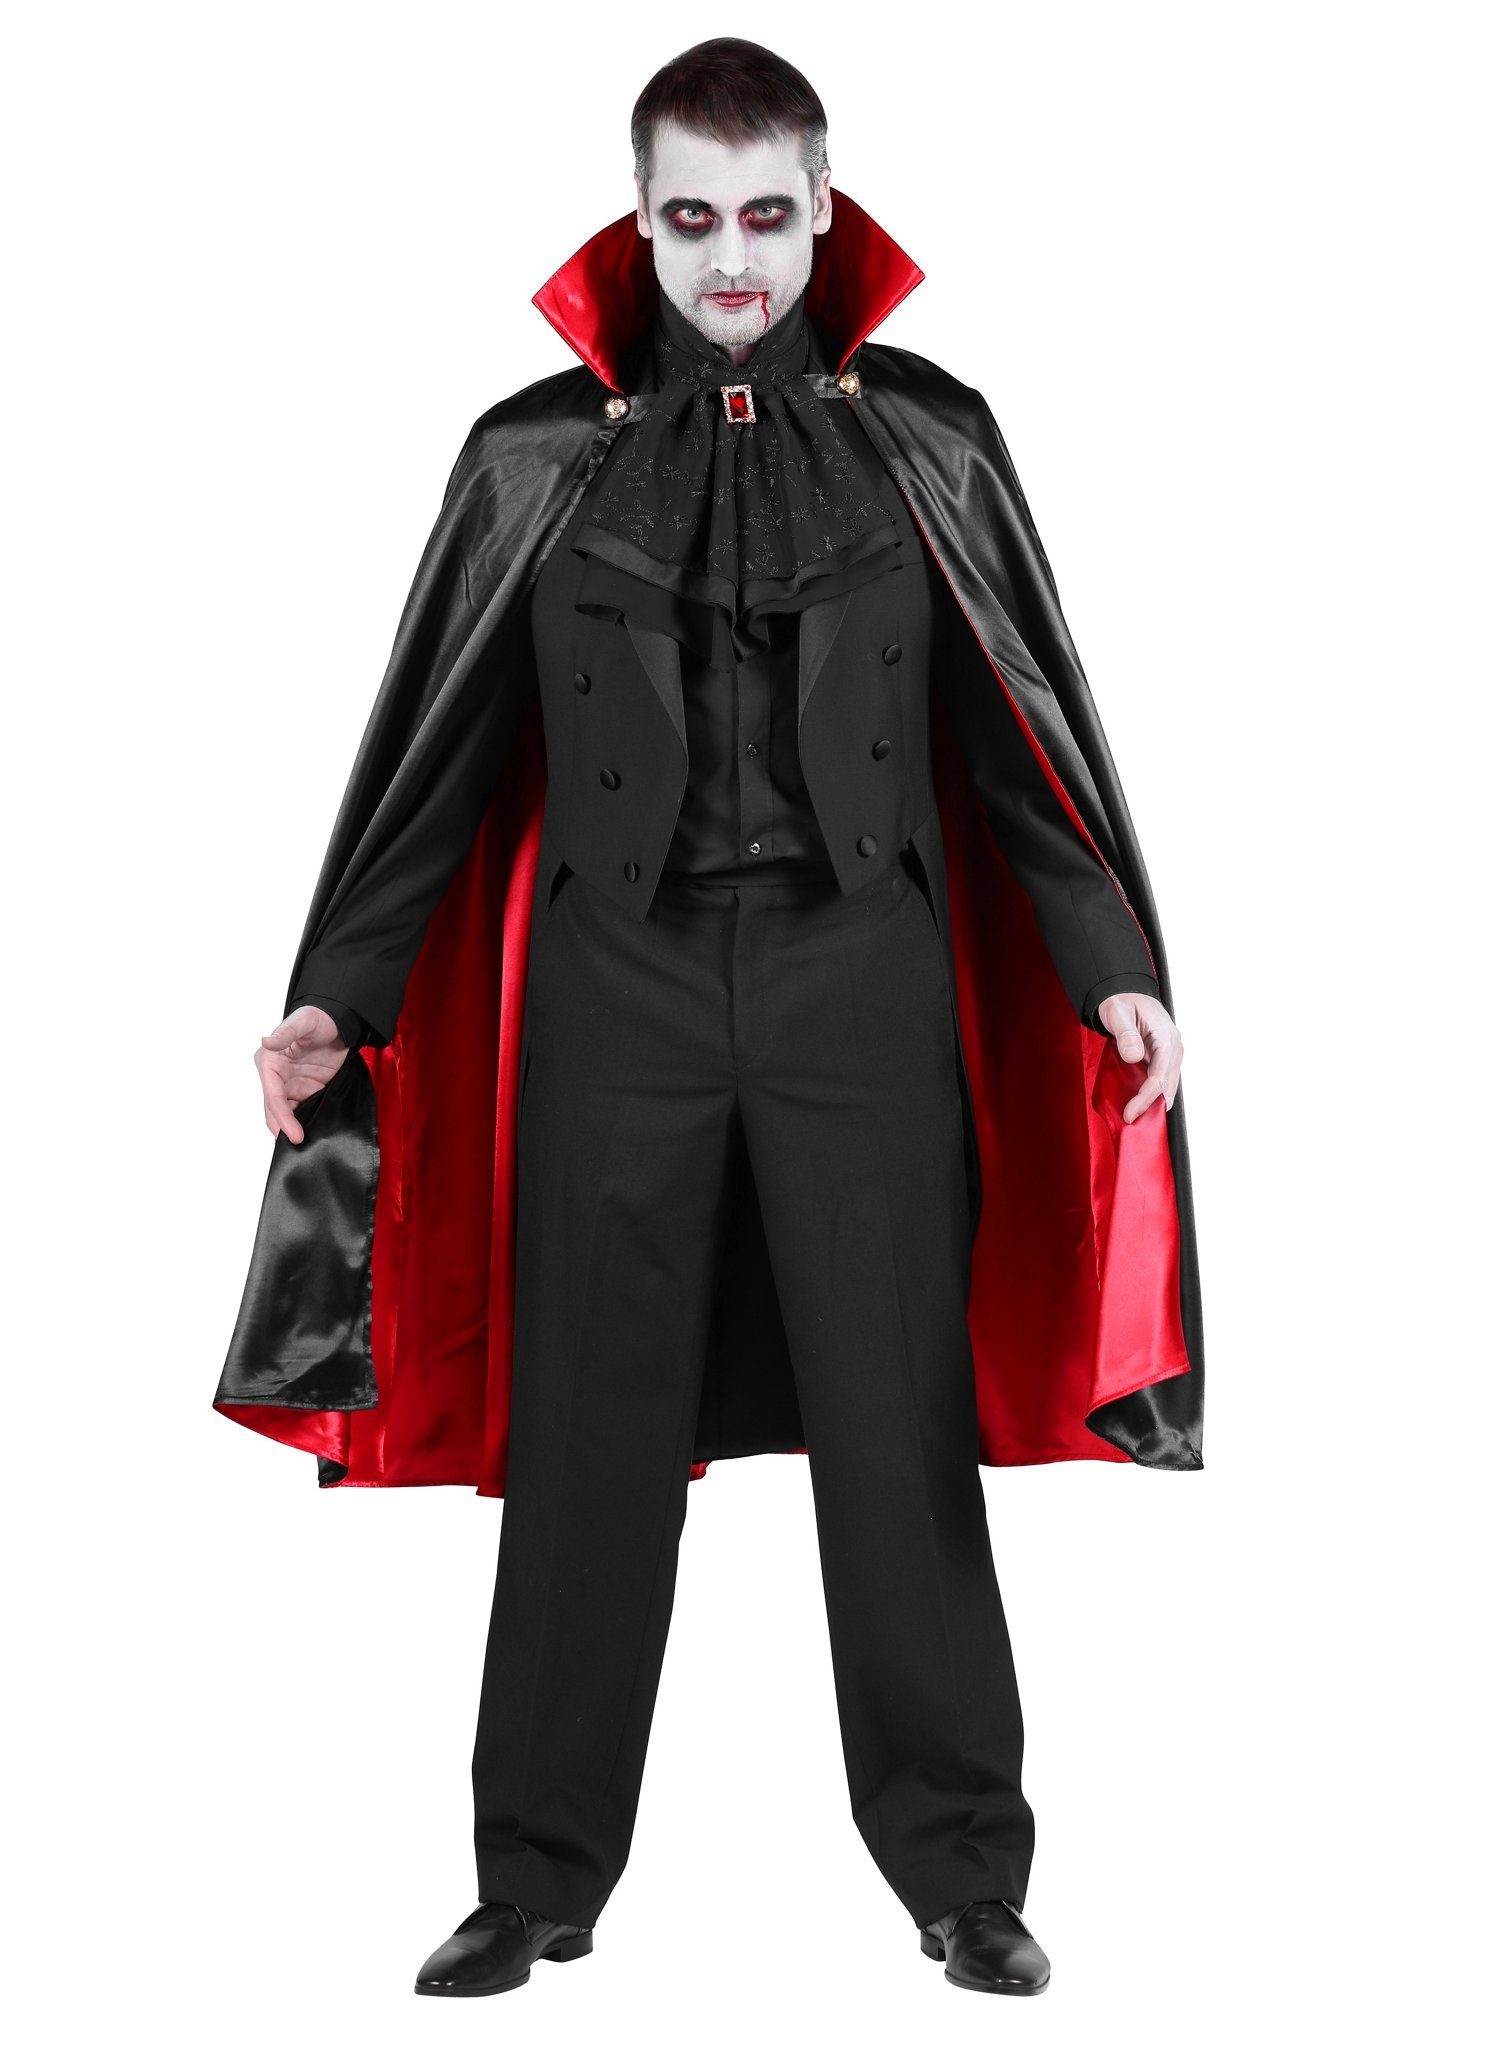 thetru Kostüm Dracula Cape mit Stehkragen schwarz-rot, Schulterumhang mit extra hohem Stehkragen